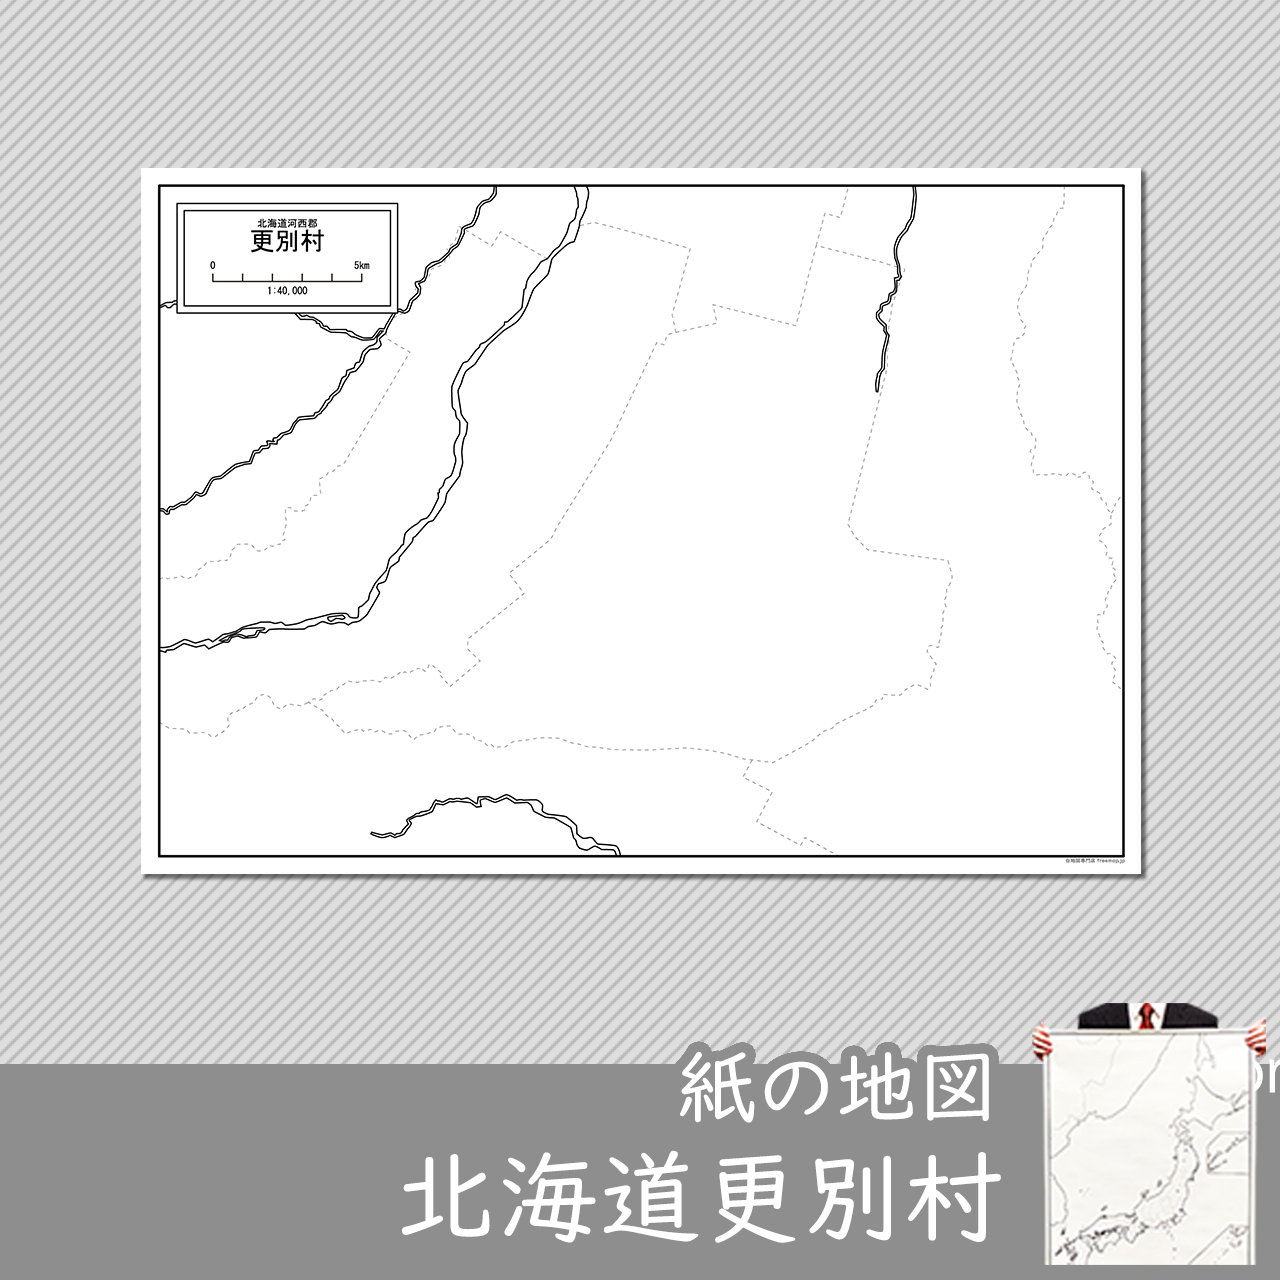 更別村の紙の白地図のサムネイル